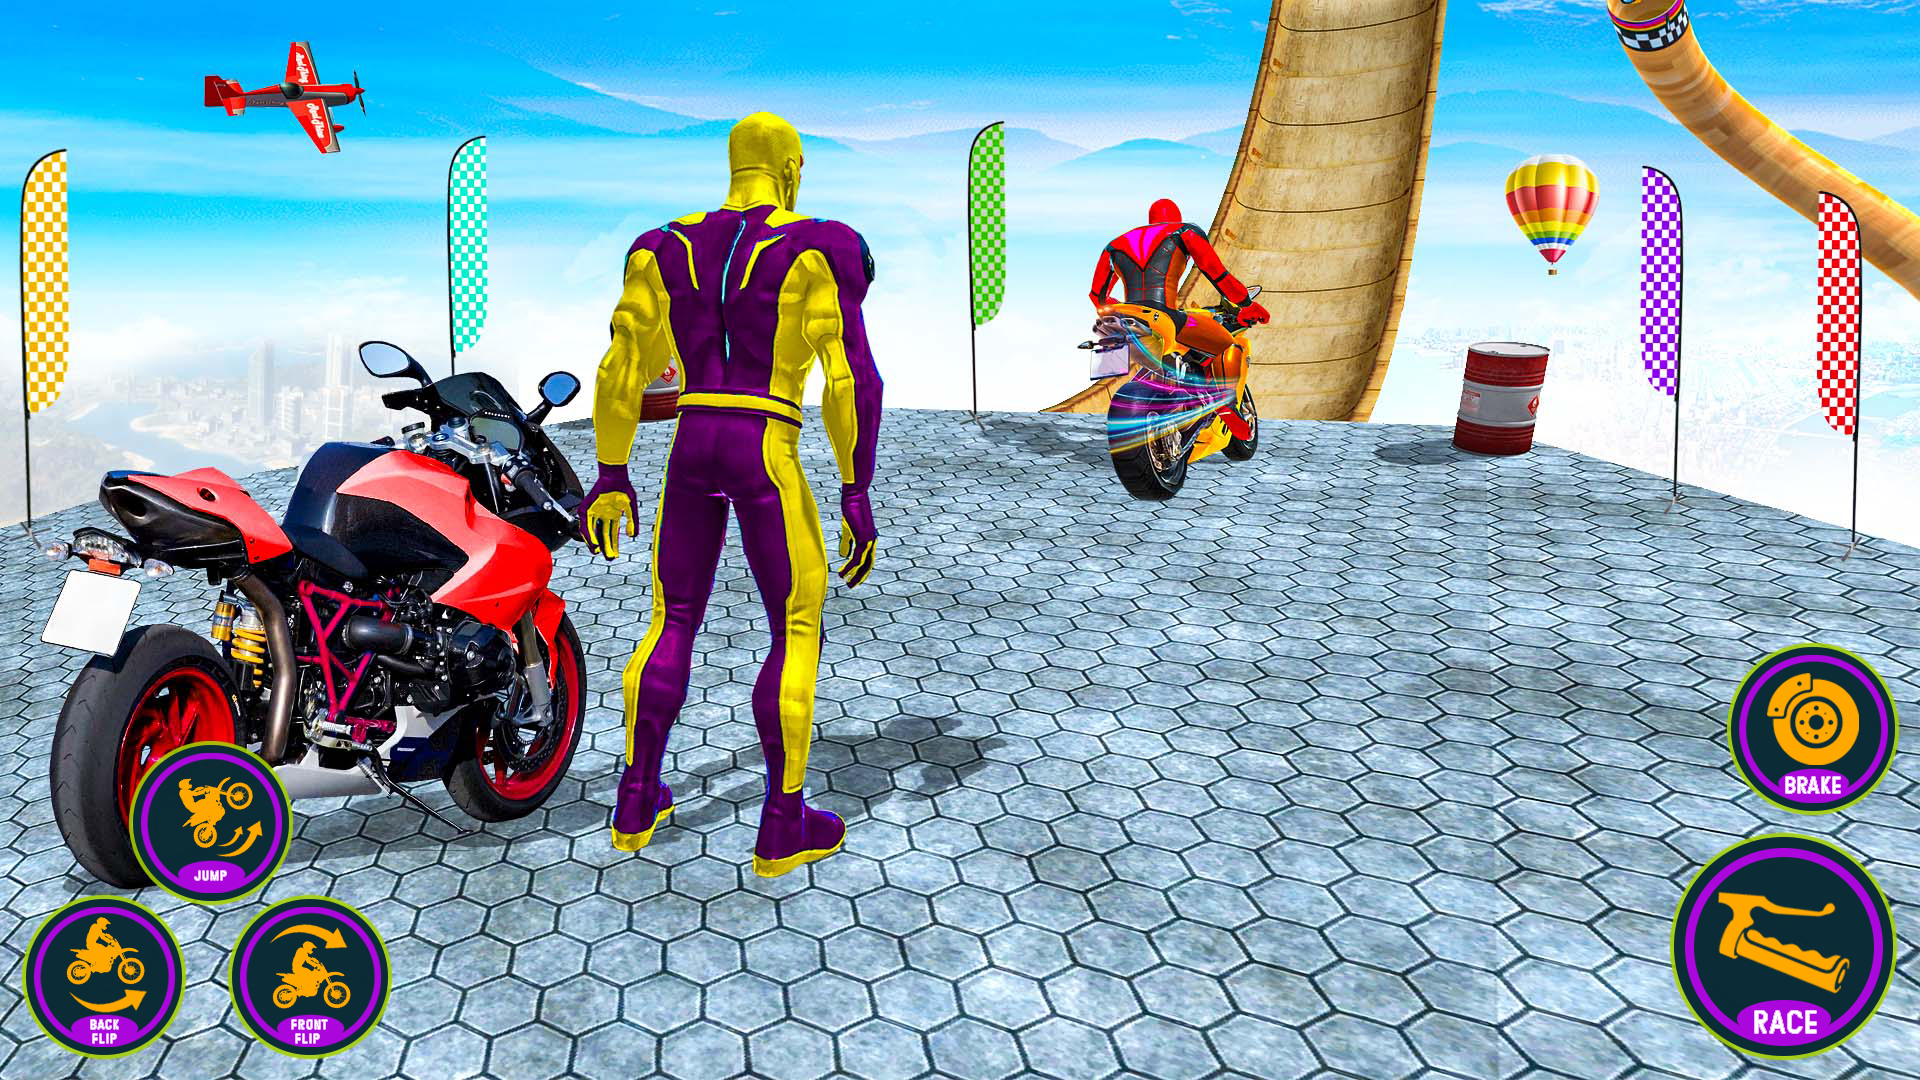 Screenshot 1 of Bike Stunt Racing Bike Game 2.3